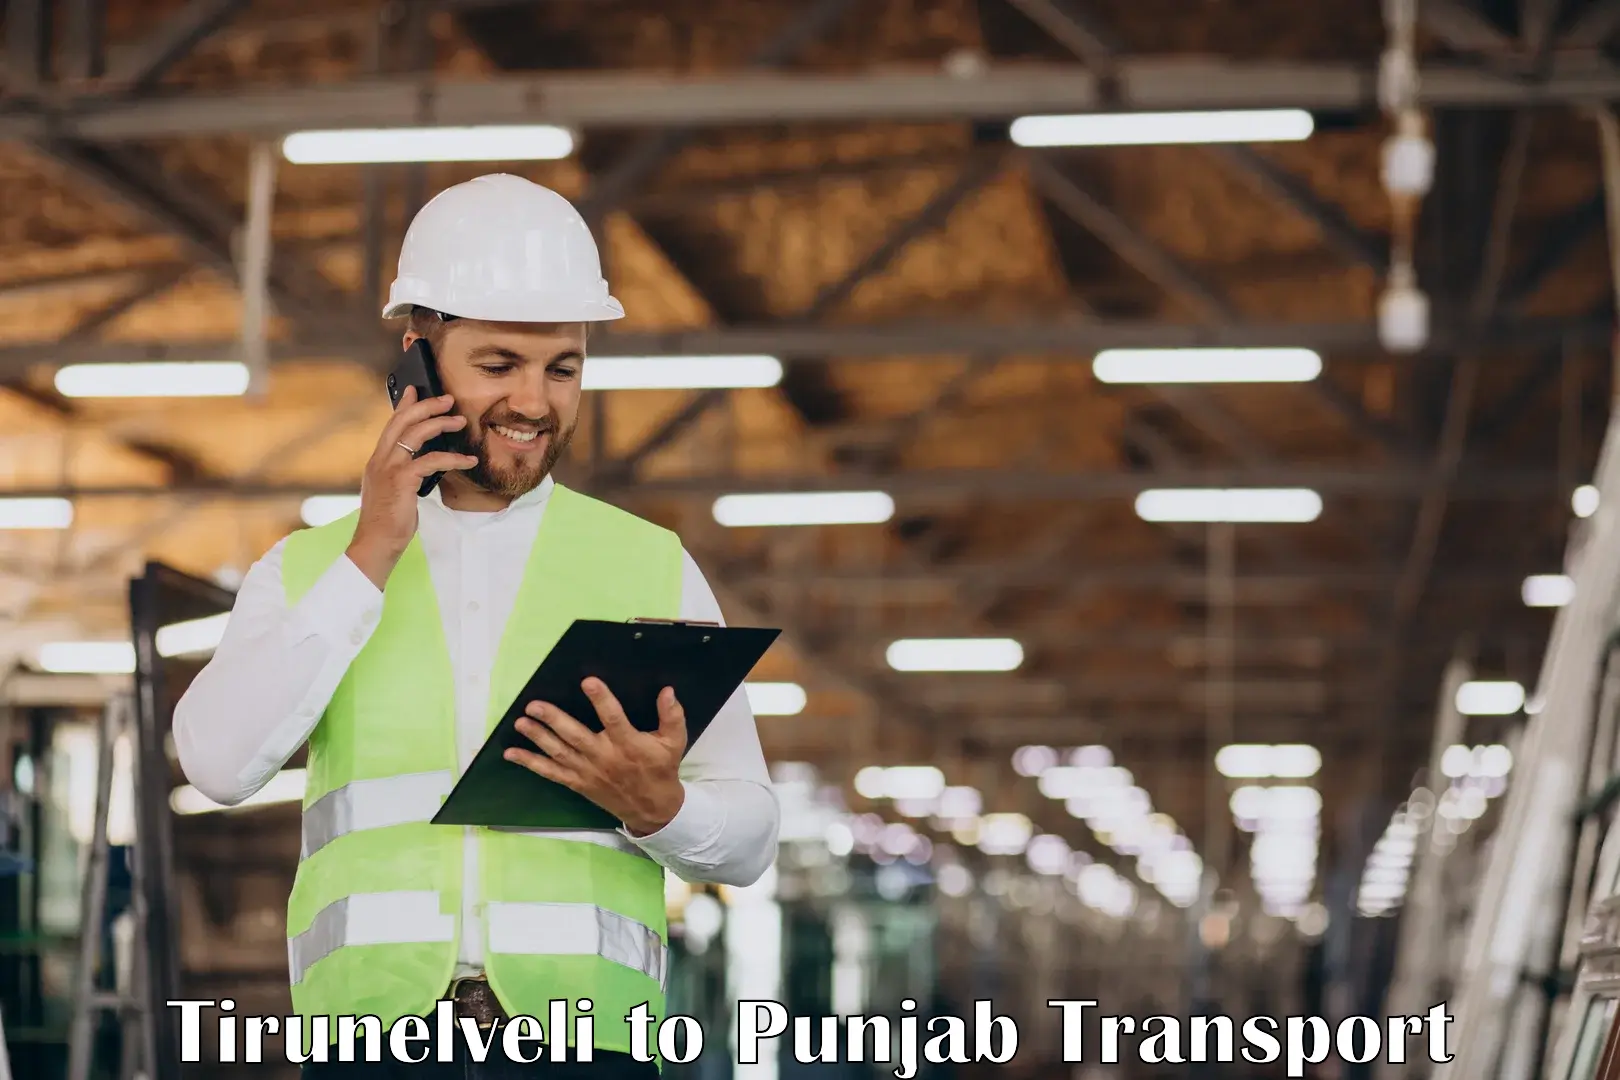 Online transport service Tirunelveli to Sirhind Fatehgarh